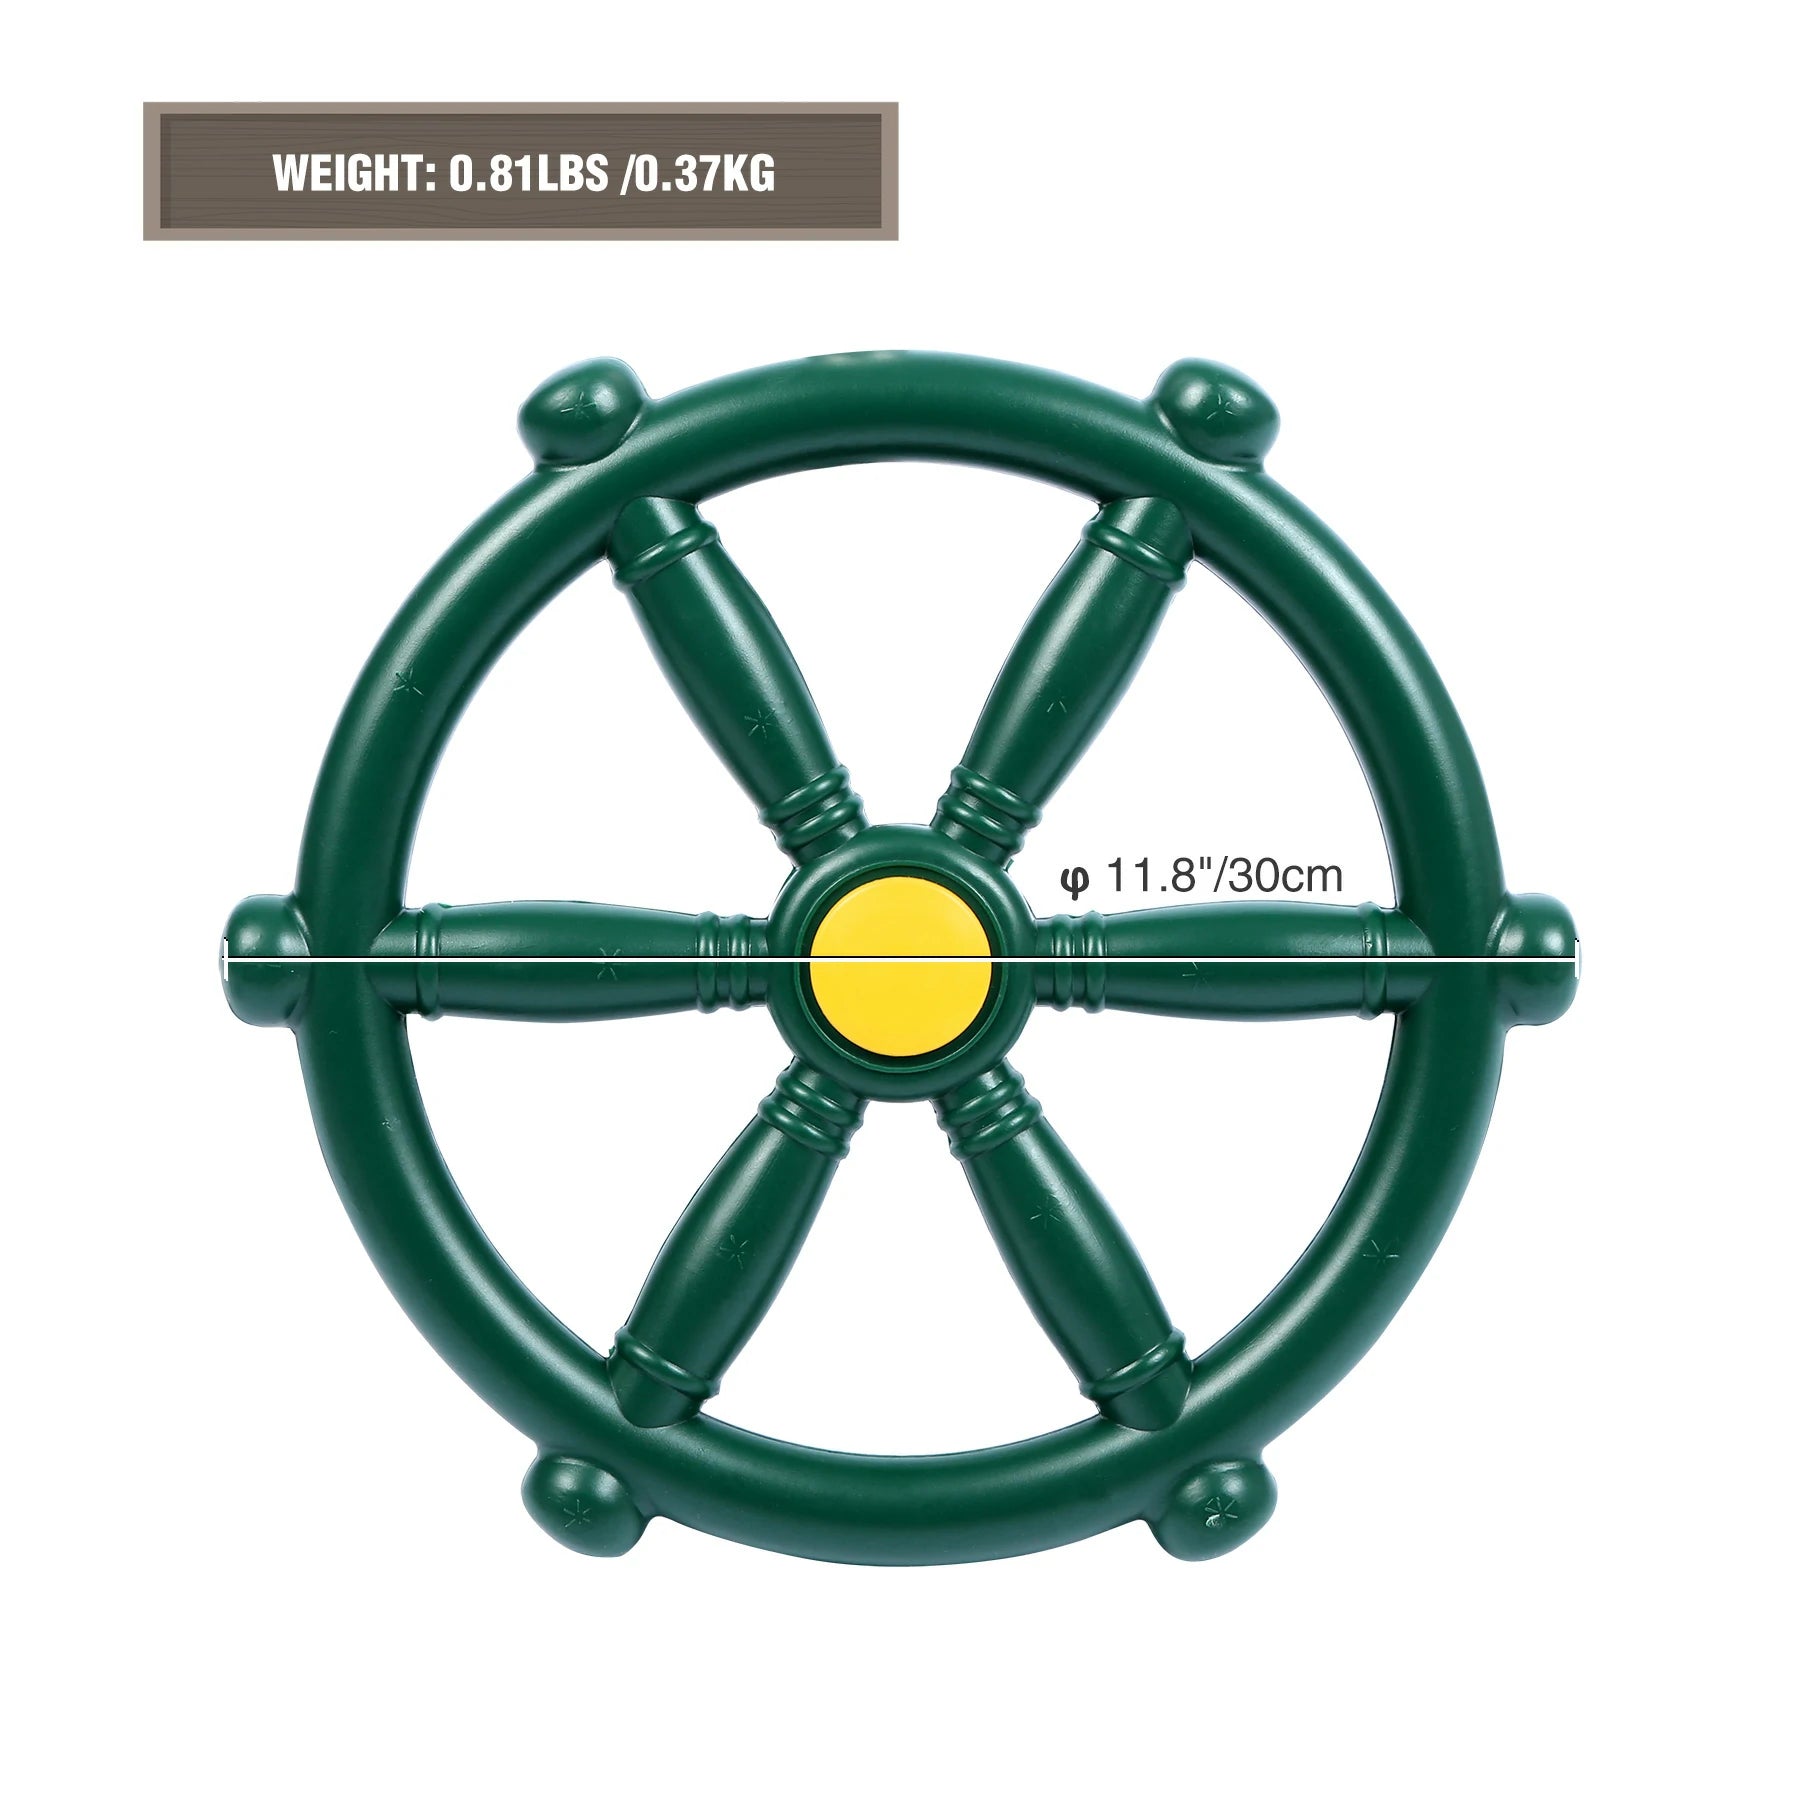 REDCAMP 11.8" Pirate Ship Wheel